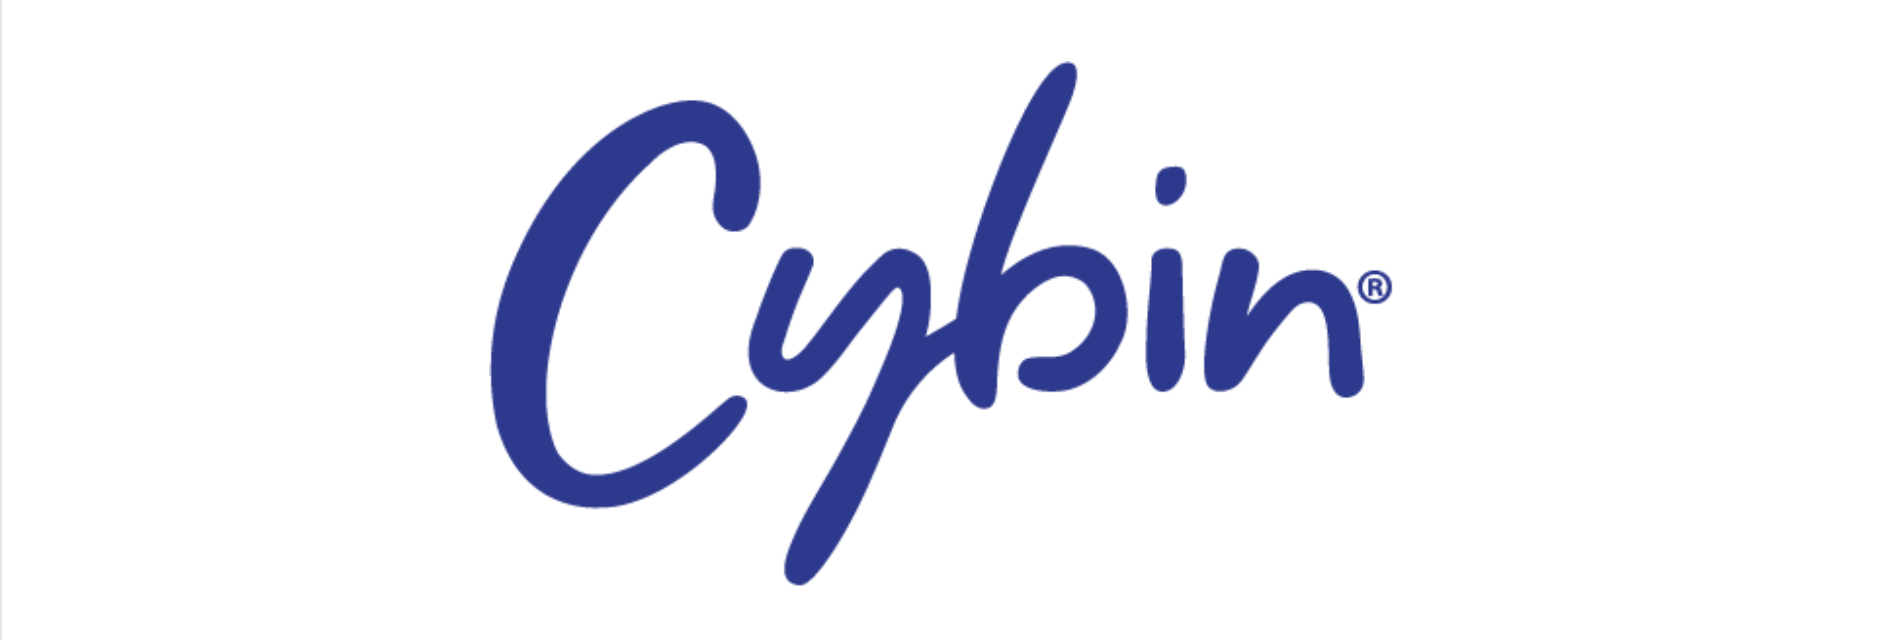 cybin logo extended